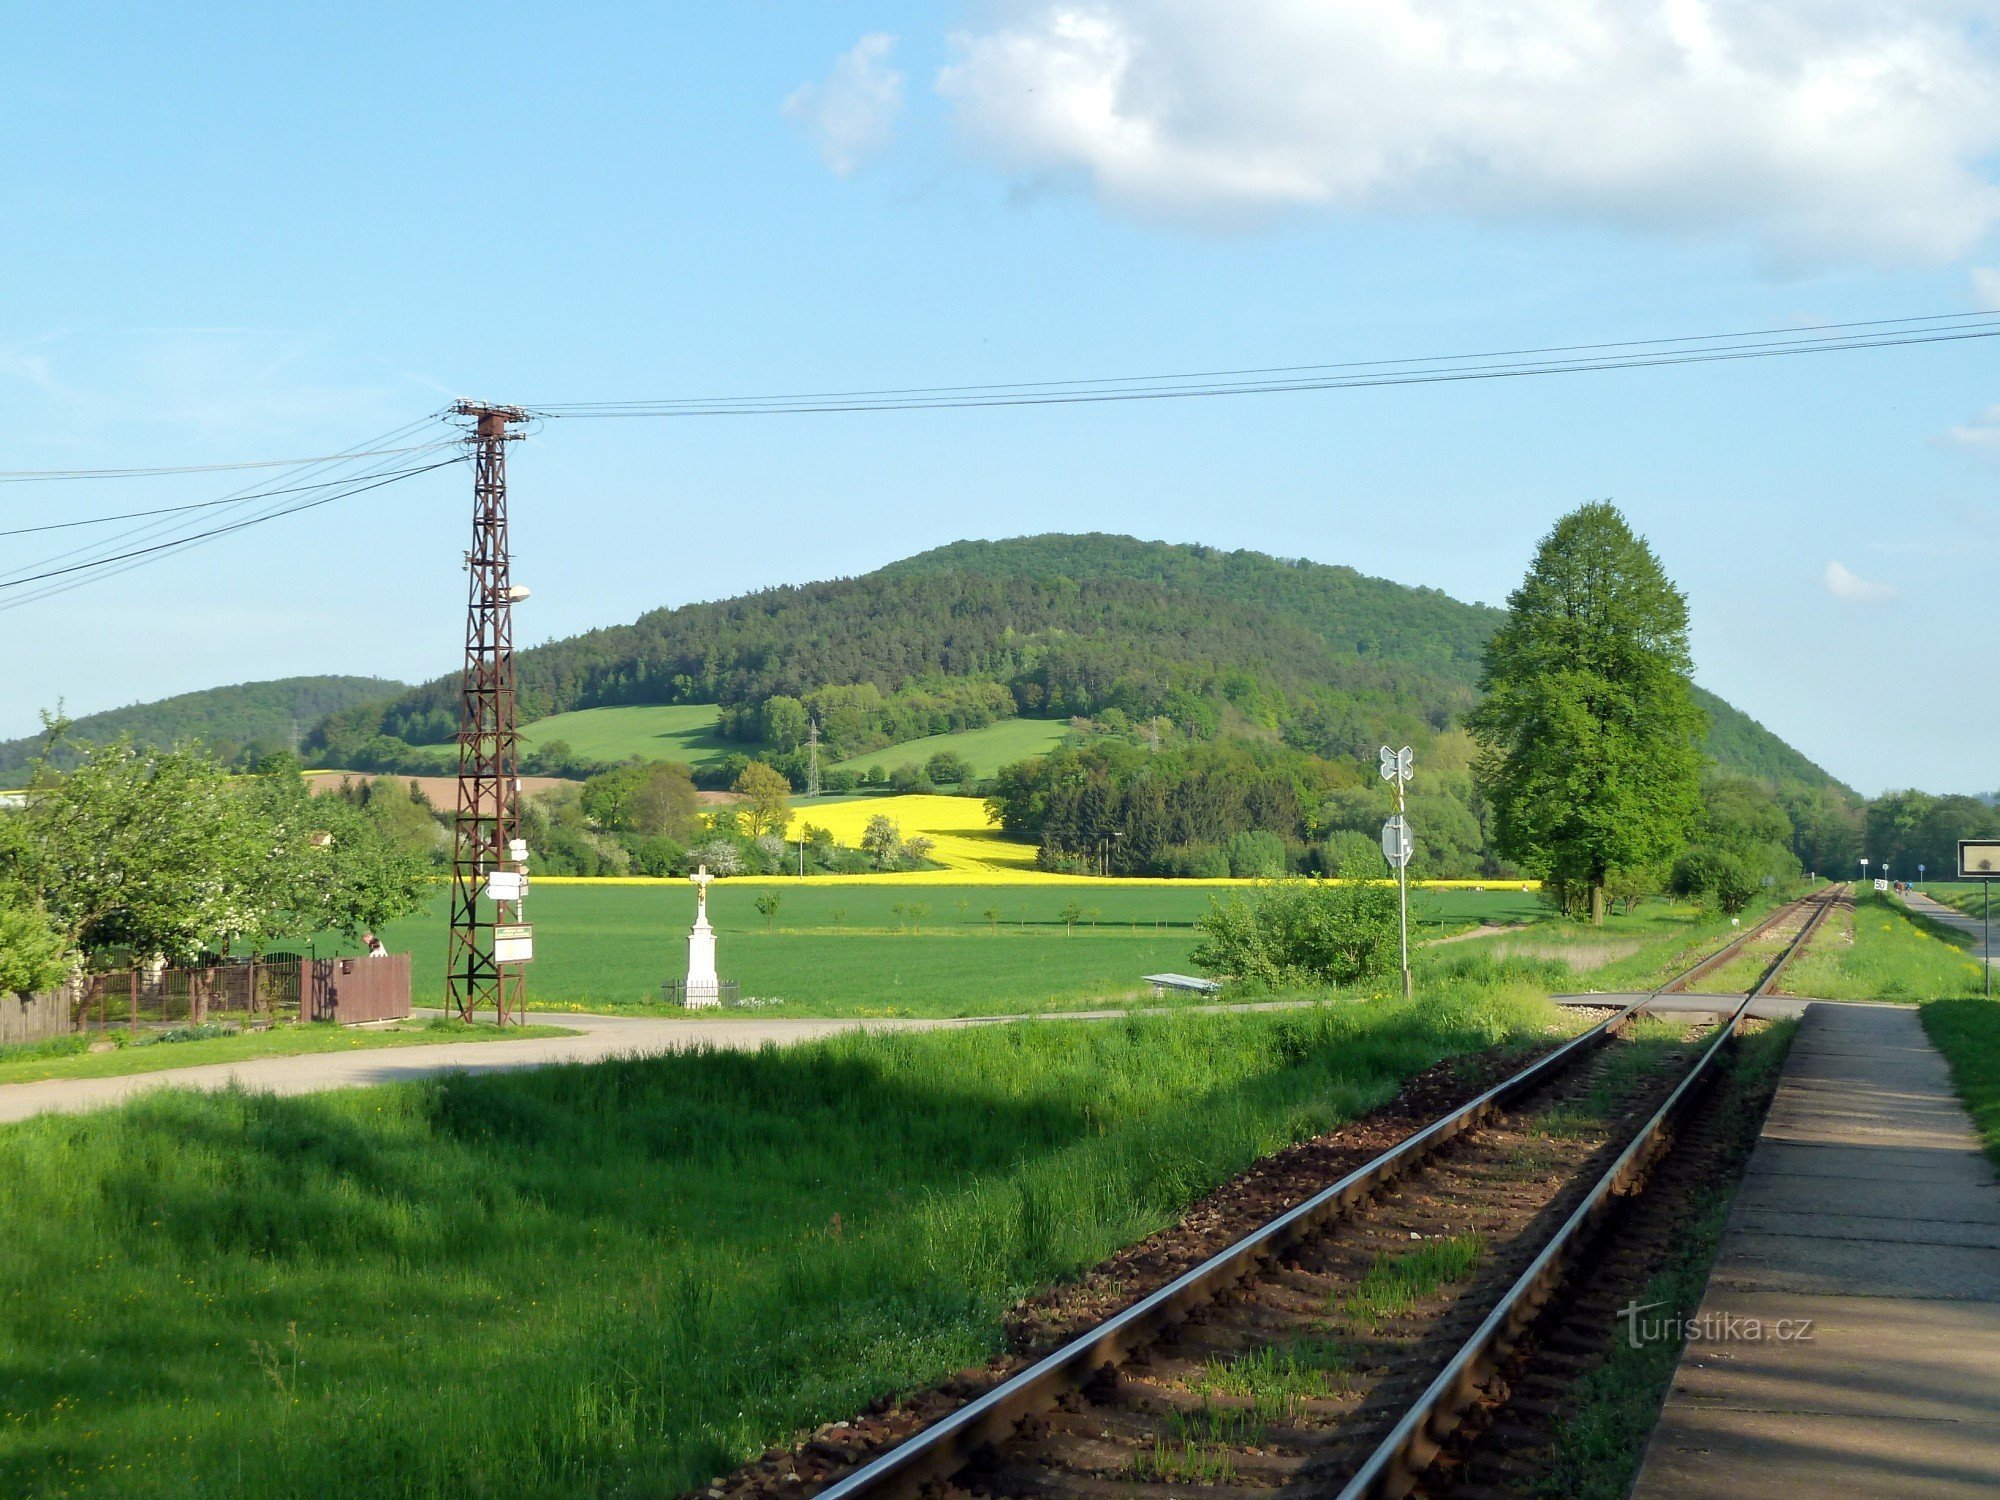 togstop - vejkryds på søjlen i venstre del af billedet